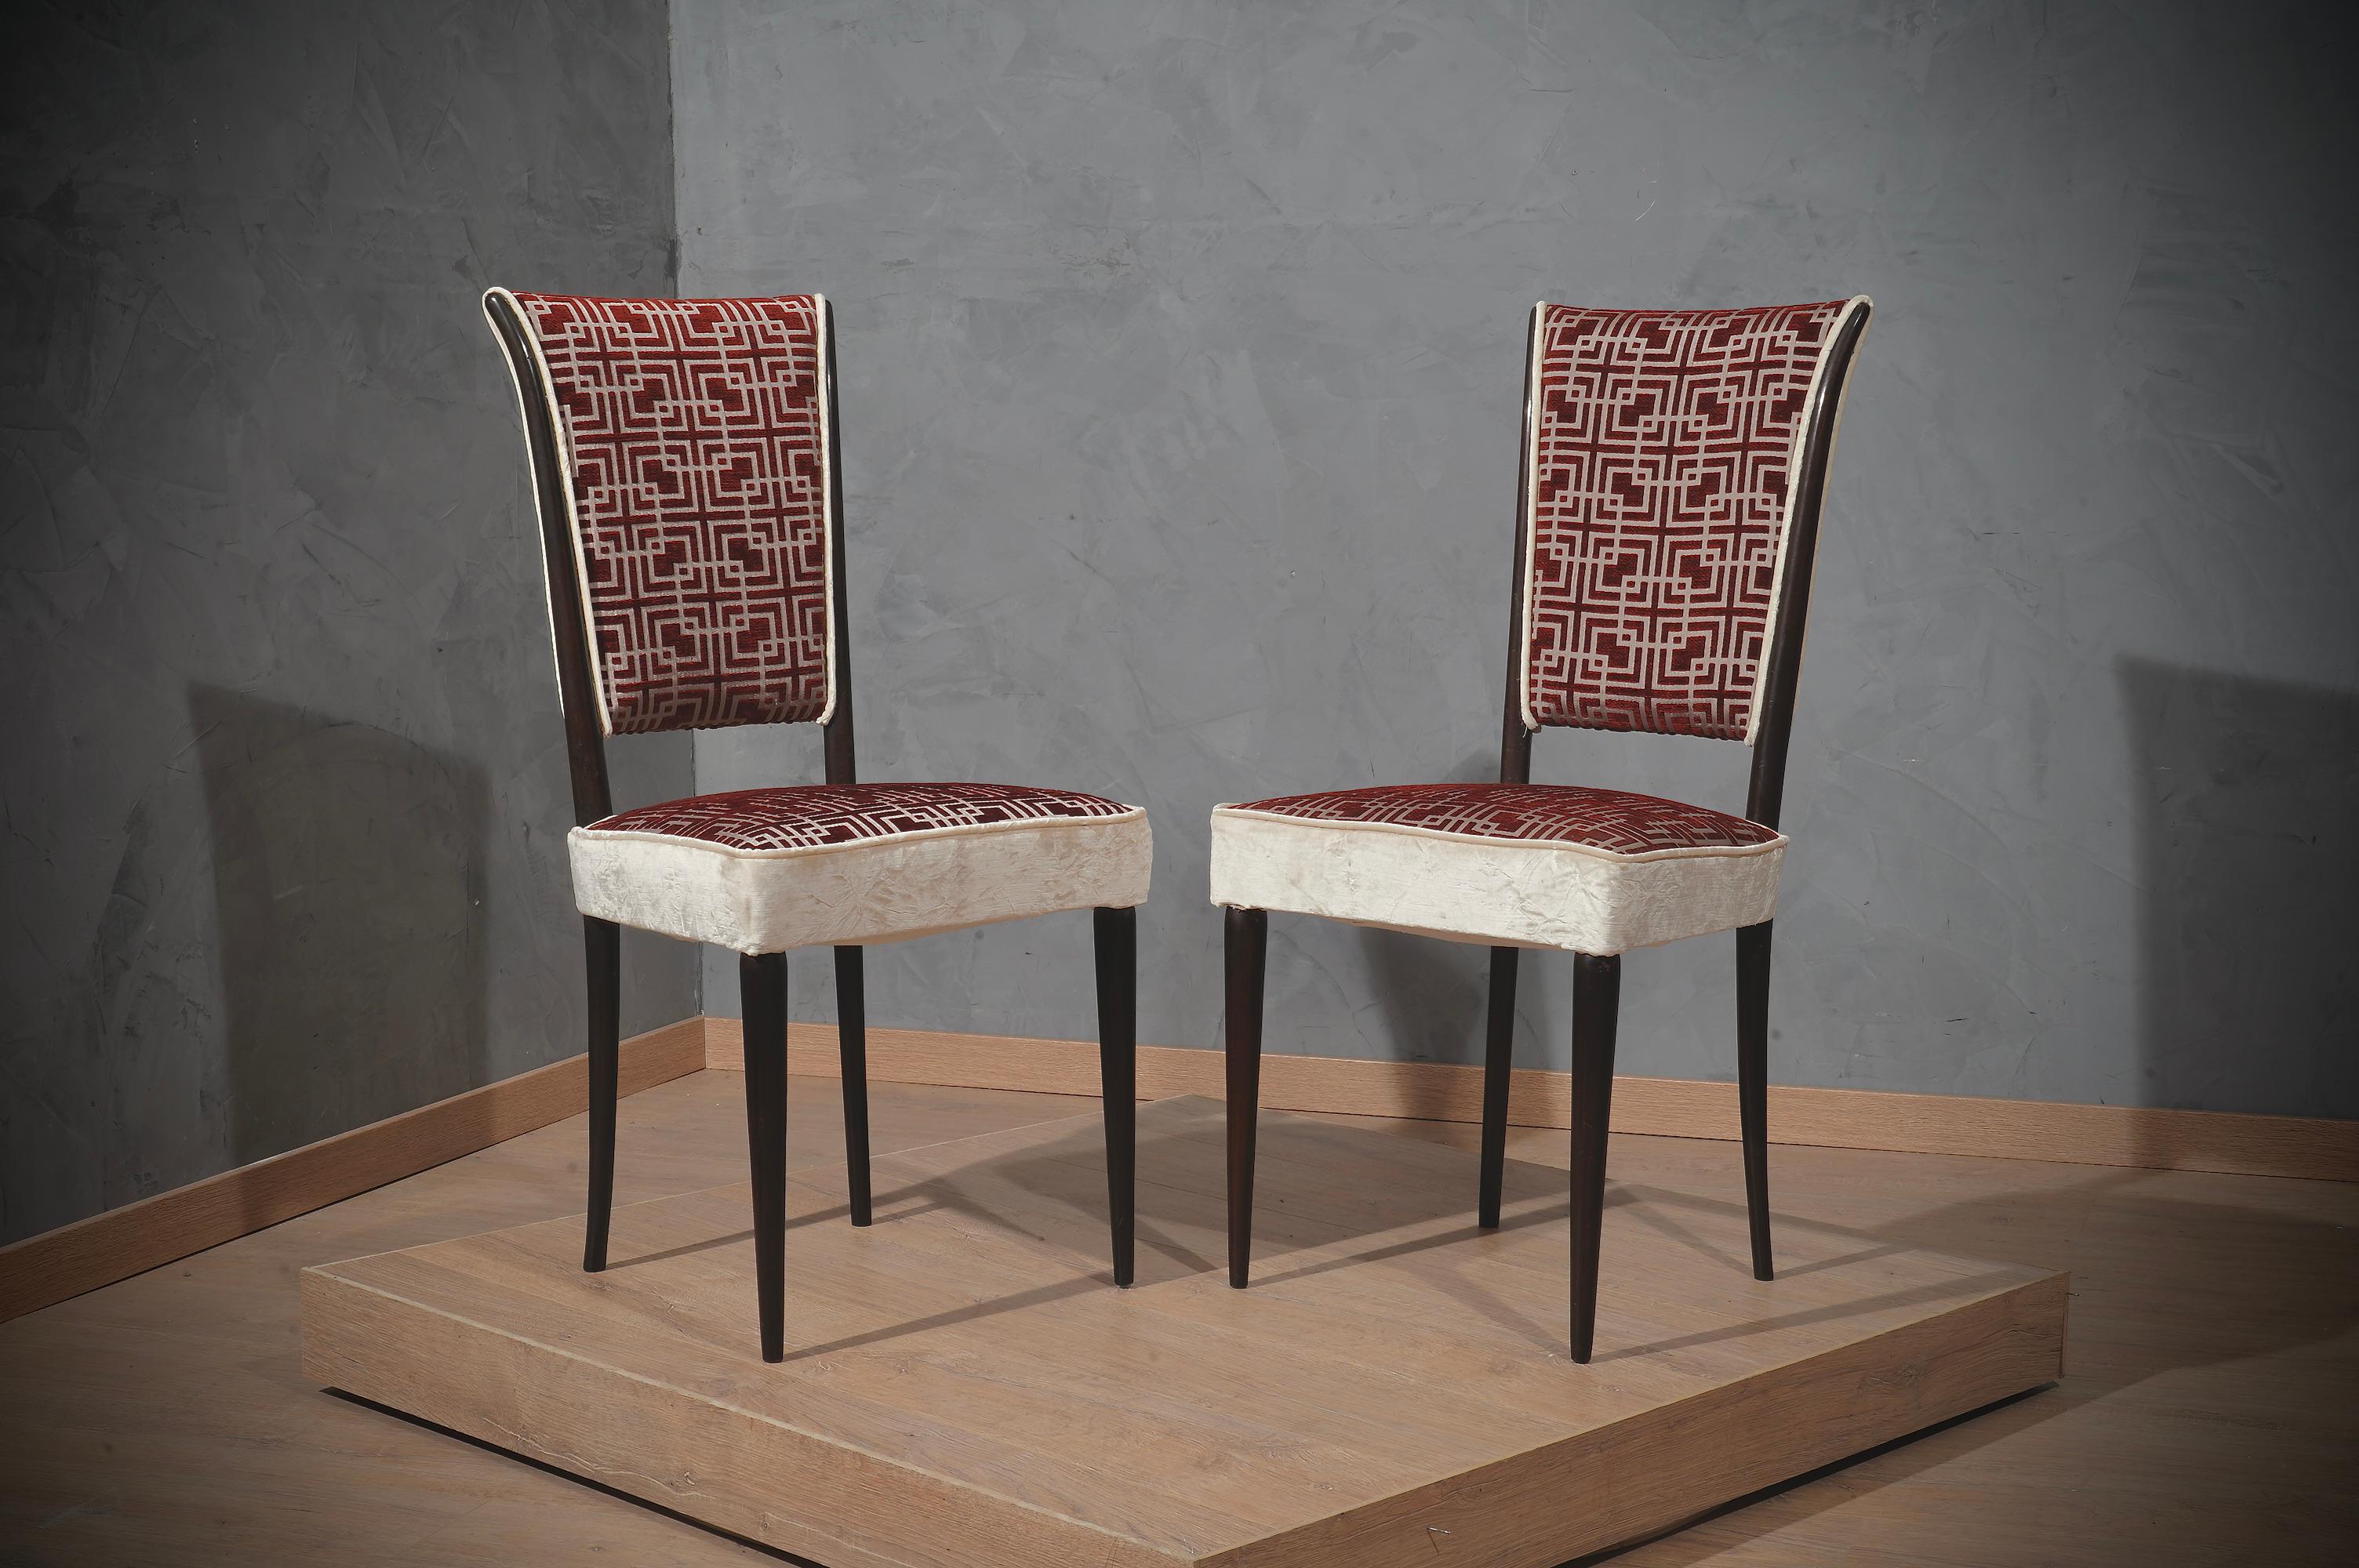 Magnifiques chaises dans le style italien caractéristique d'Osvaldo Borsani. Dossier de la chaise avec un très beau design et un tissu très riche.

Les chaises ont une structure en bois et elles ont été bien polies à la gomme-laque foncée. En